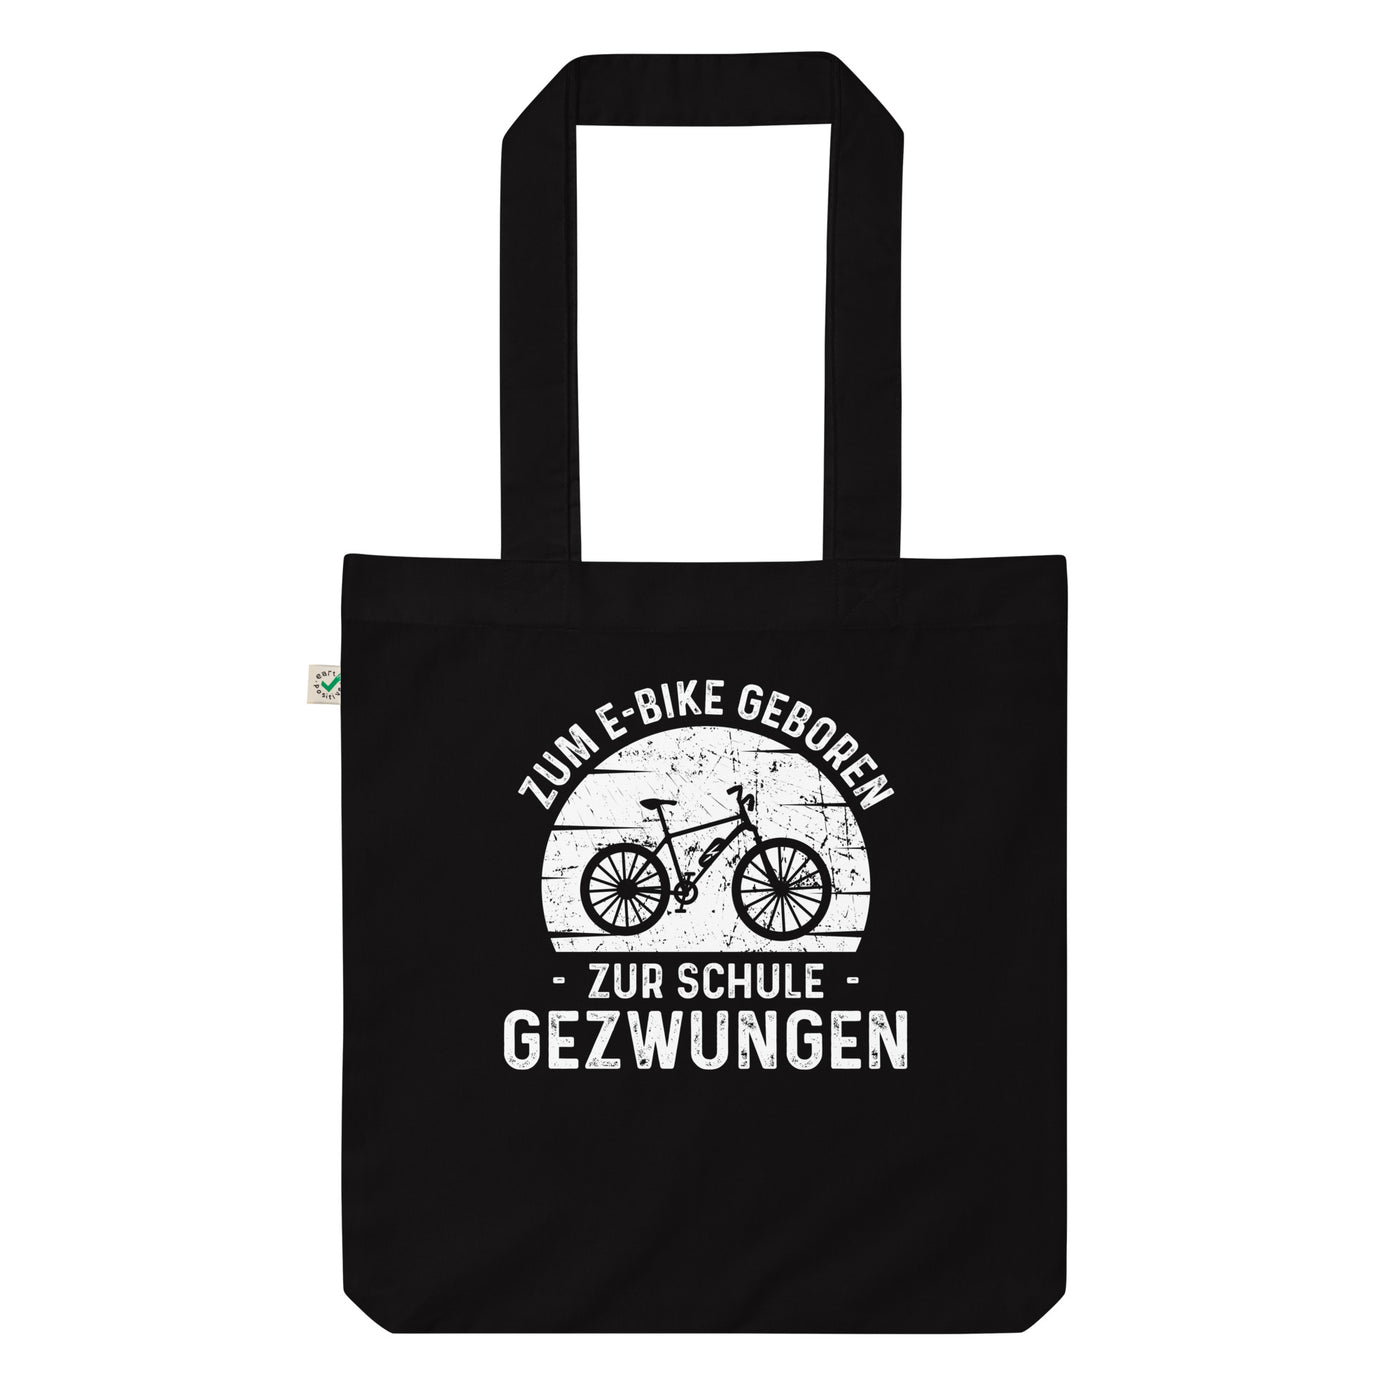 Zum E-Bike Geboren Zur Schule Gezwungen - Organic Einkaufstasche e-bike Black